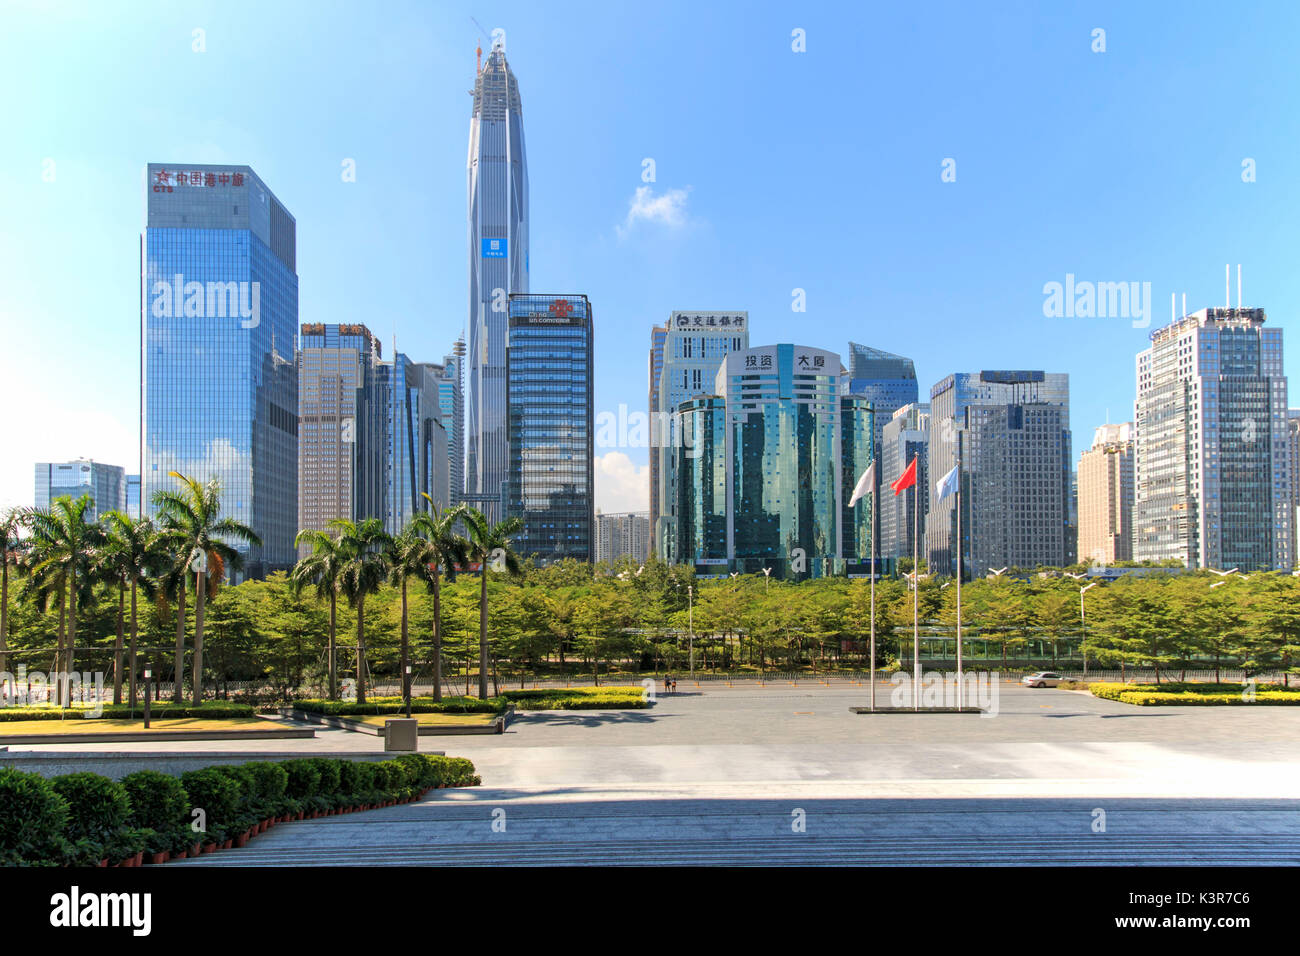 Lo skyline di Shenzhen come visto dal palazzo della Borsa con la KK100, il secondo edificio più alto della città, su sfondo, Cina Foto Stock